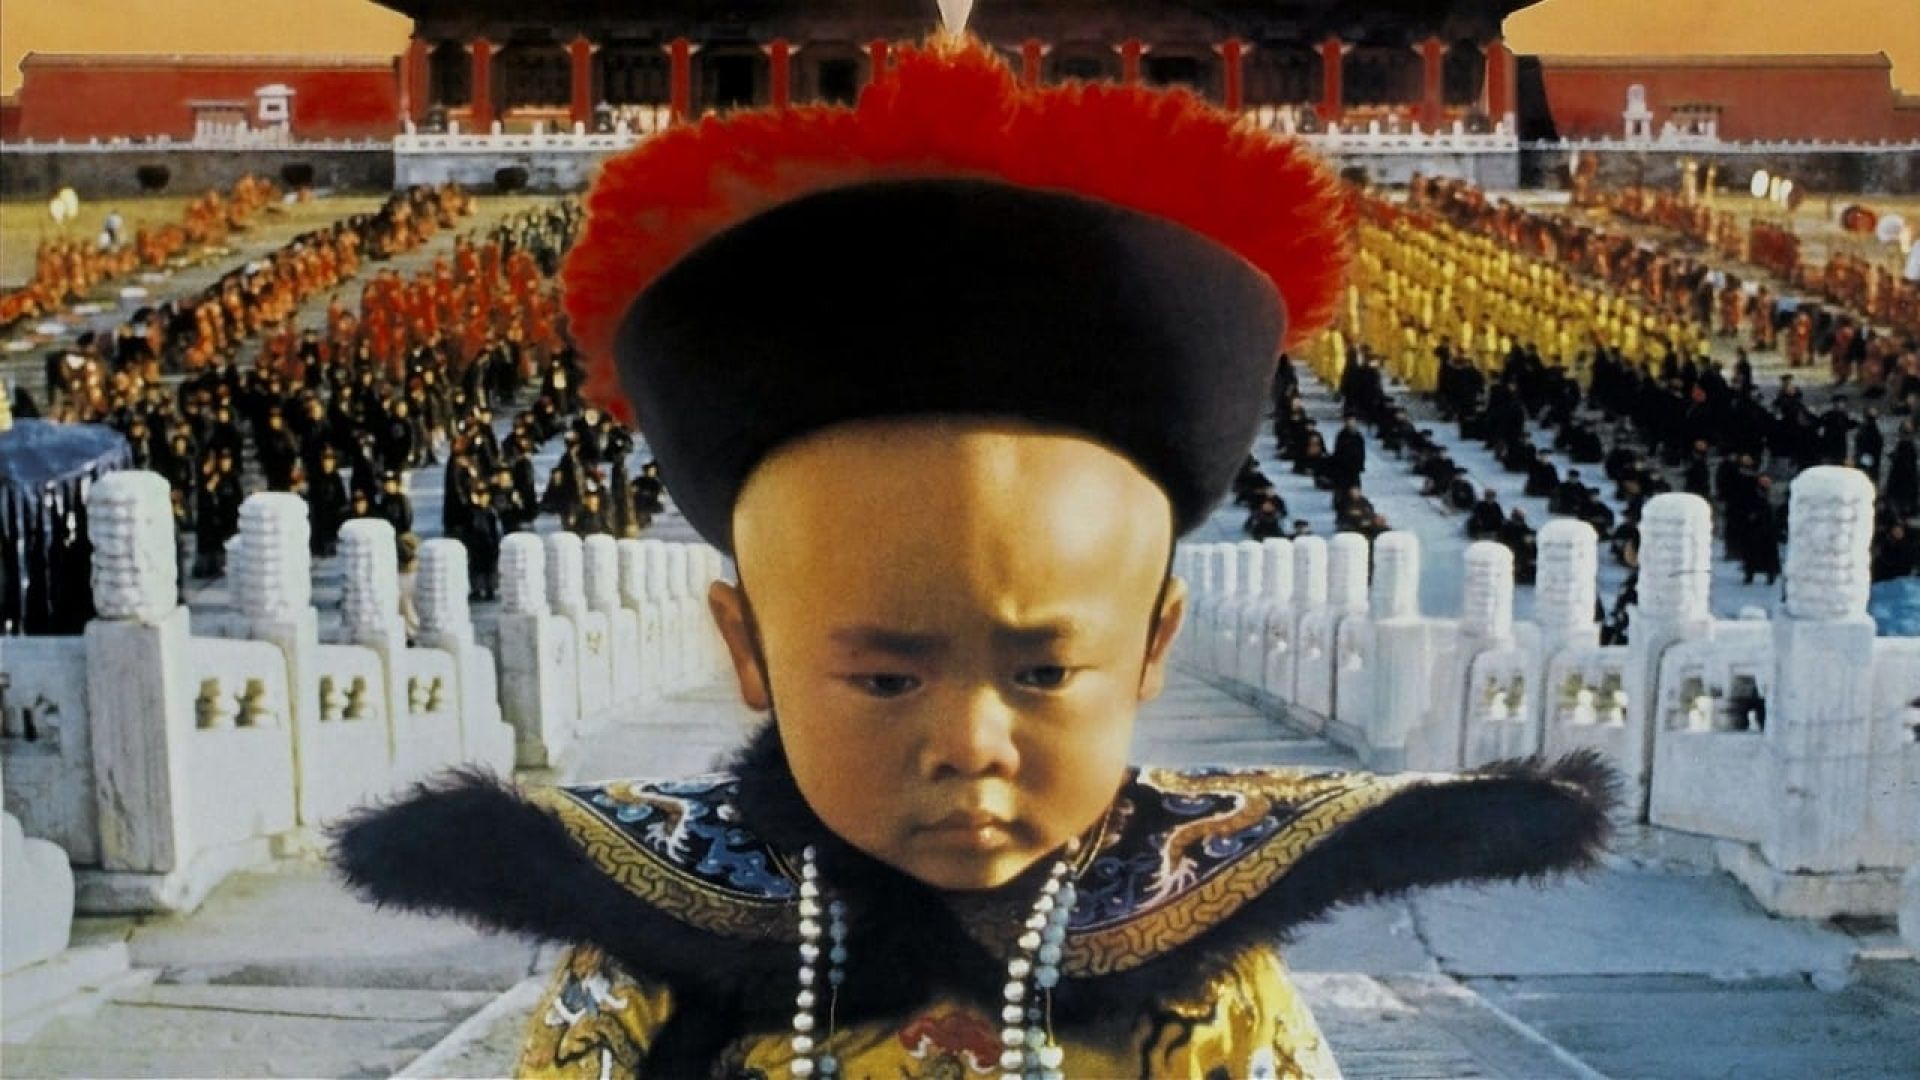 دانلود فیلم The Last Emperor 1987